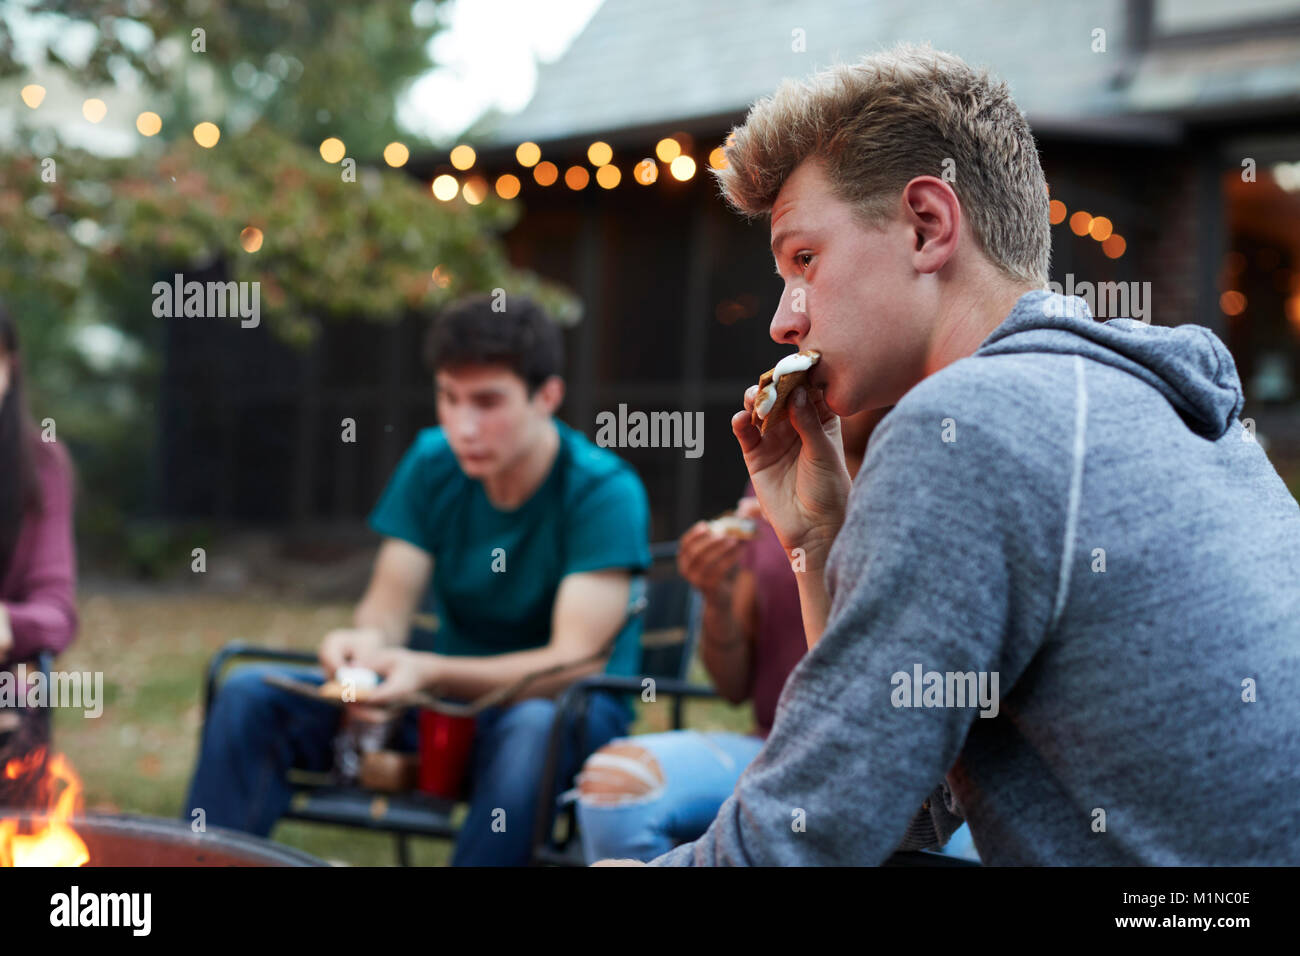 Teenage boy eating s'more avec des amis à un foyer Banque D'Images